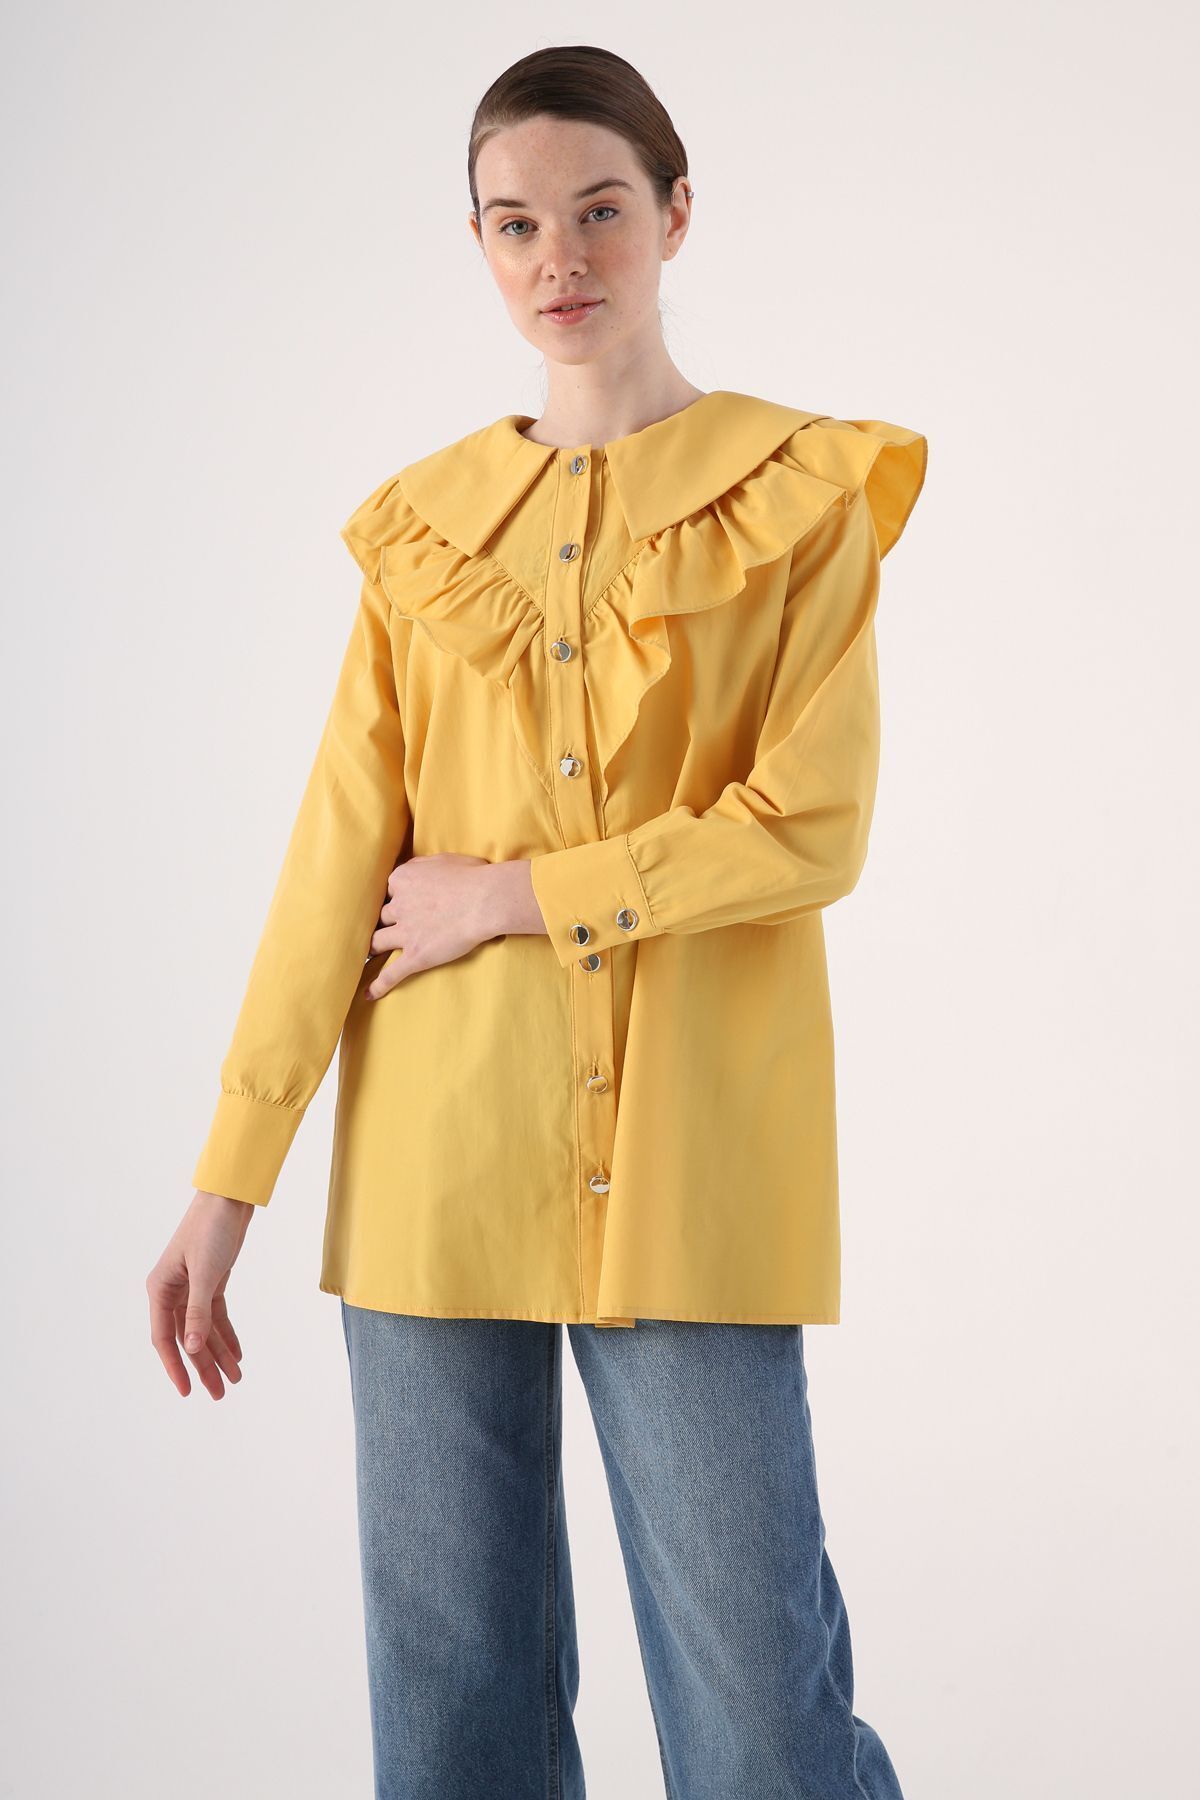 ALLDAY Sarı Fırfırlı Büyük Yakalı Gömlek Tunik